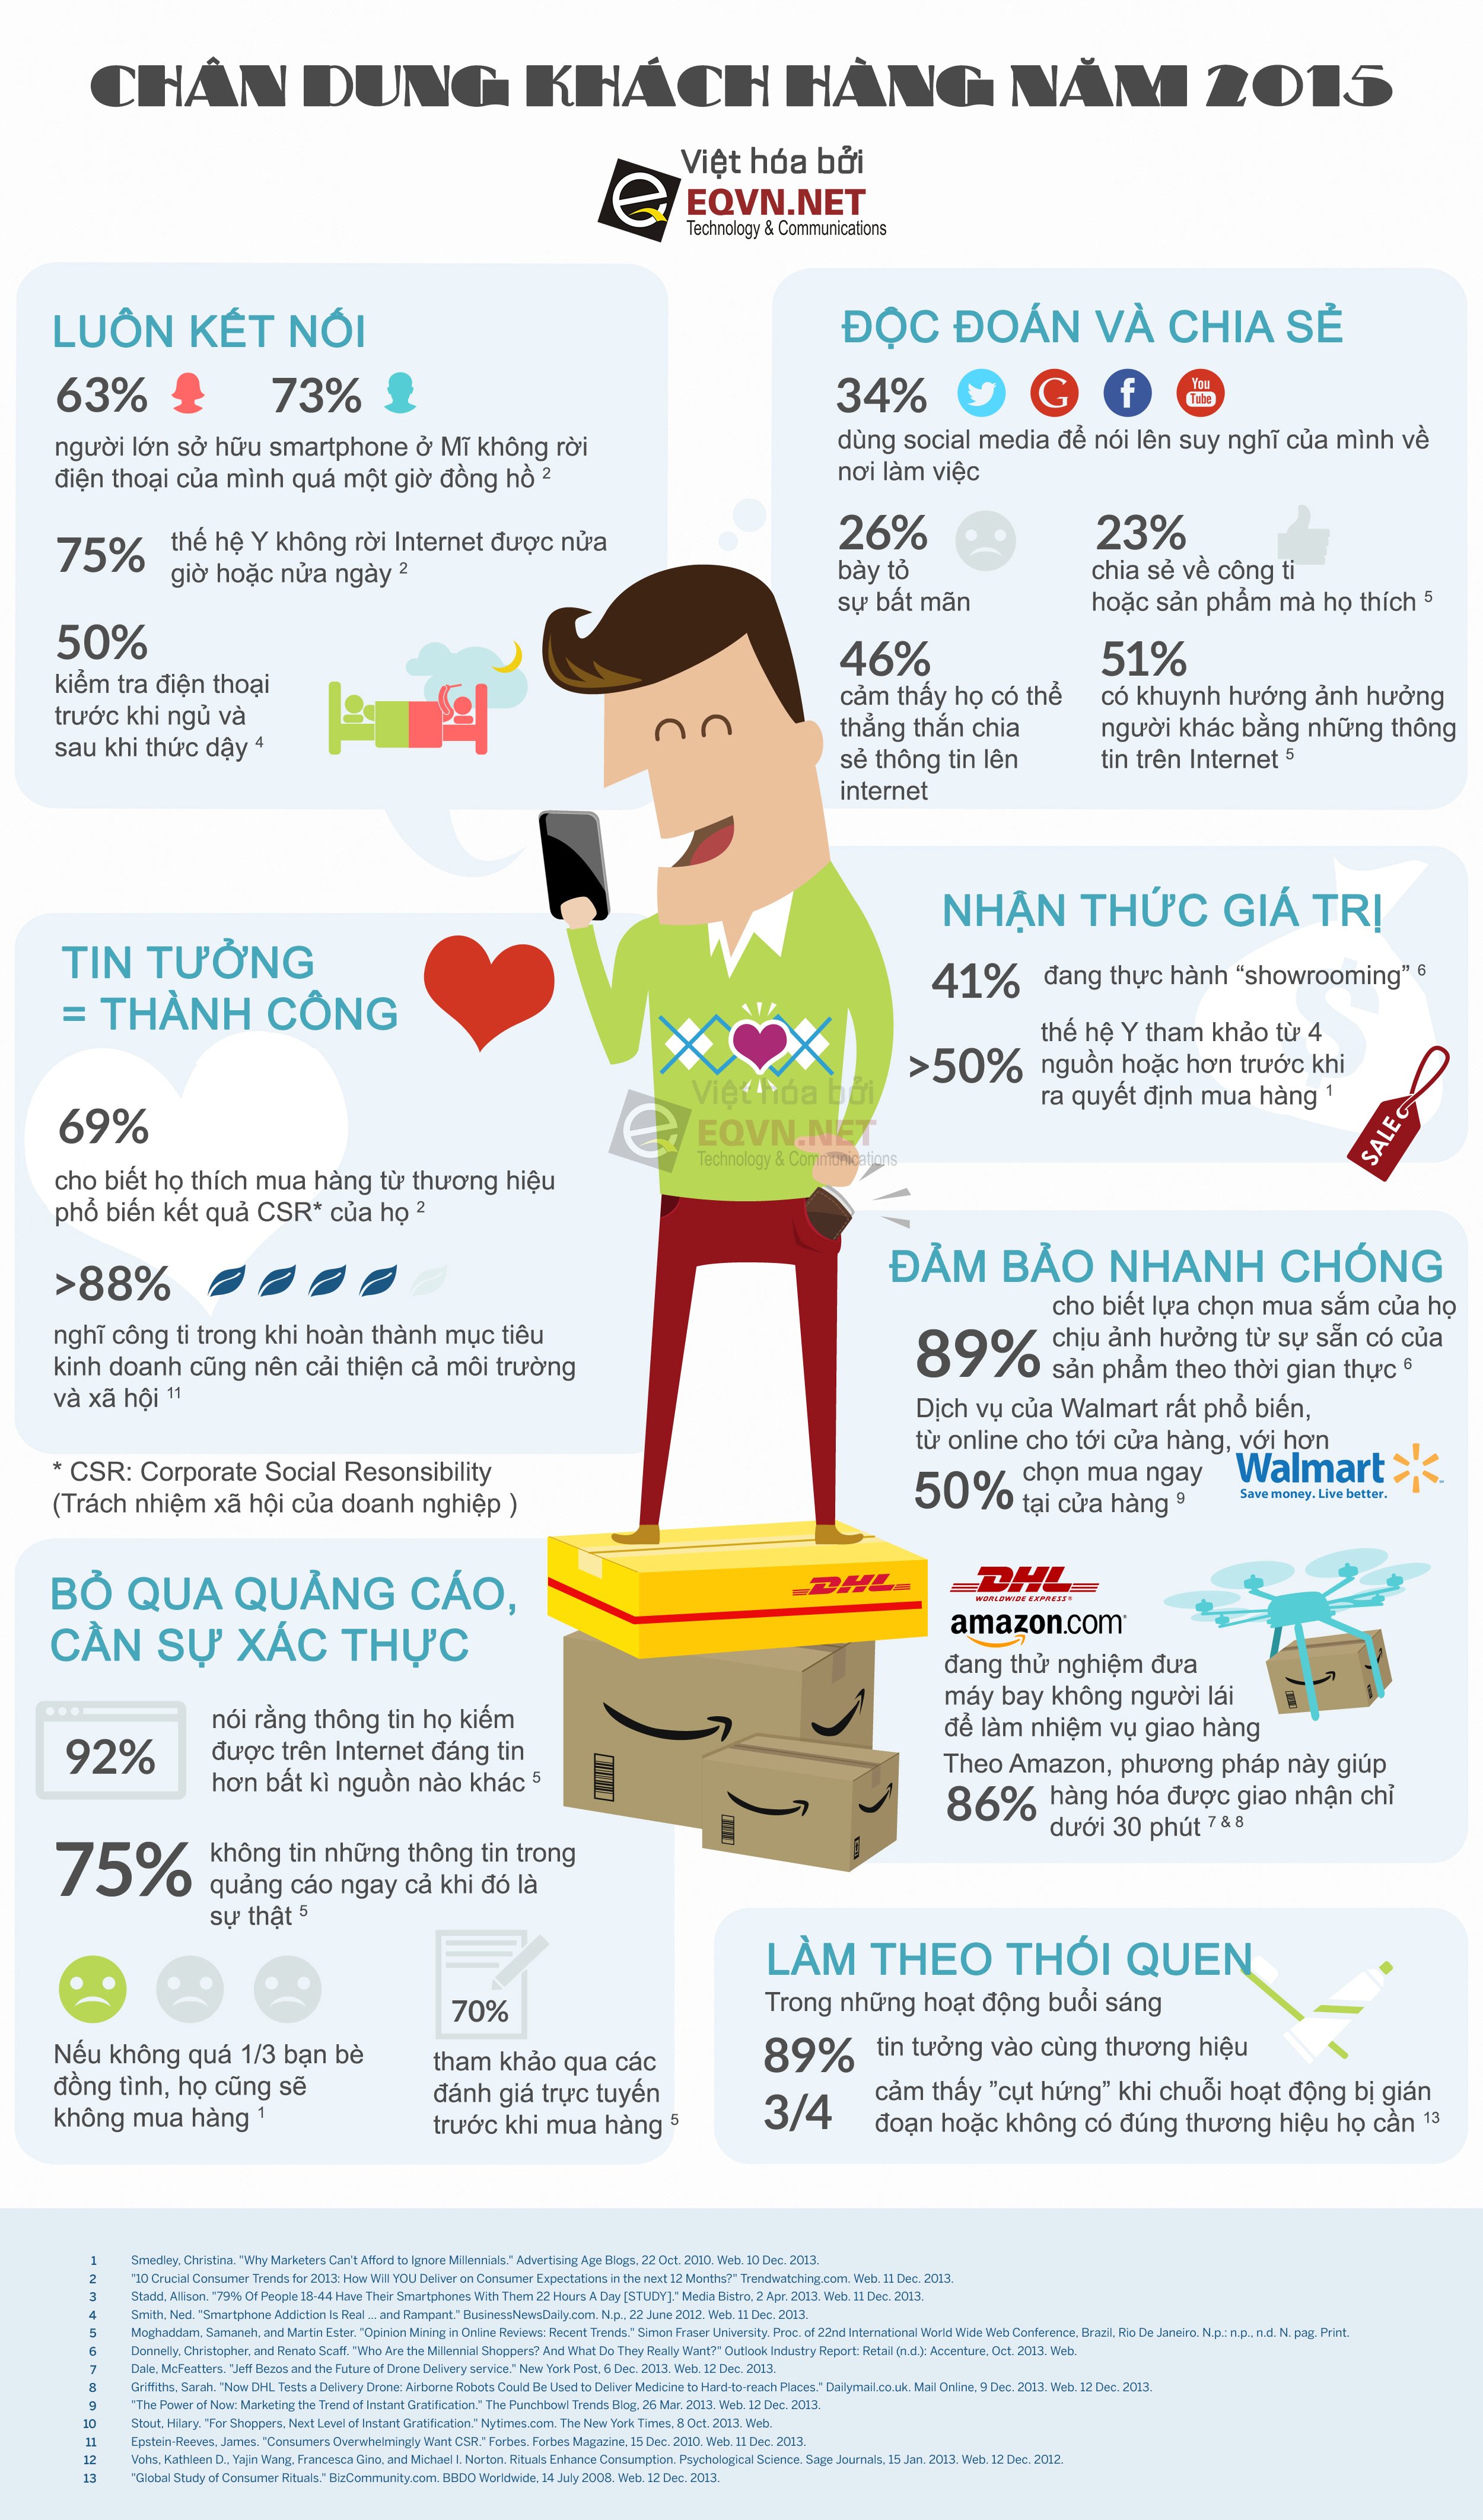 [Infographic] Khám phá chân dung khách hàng năm 2015